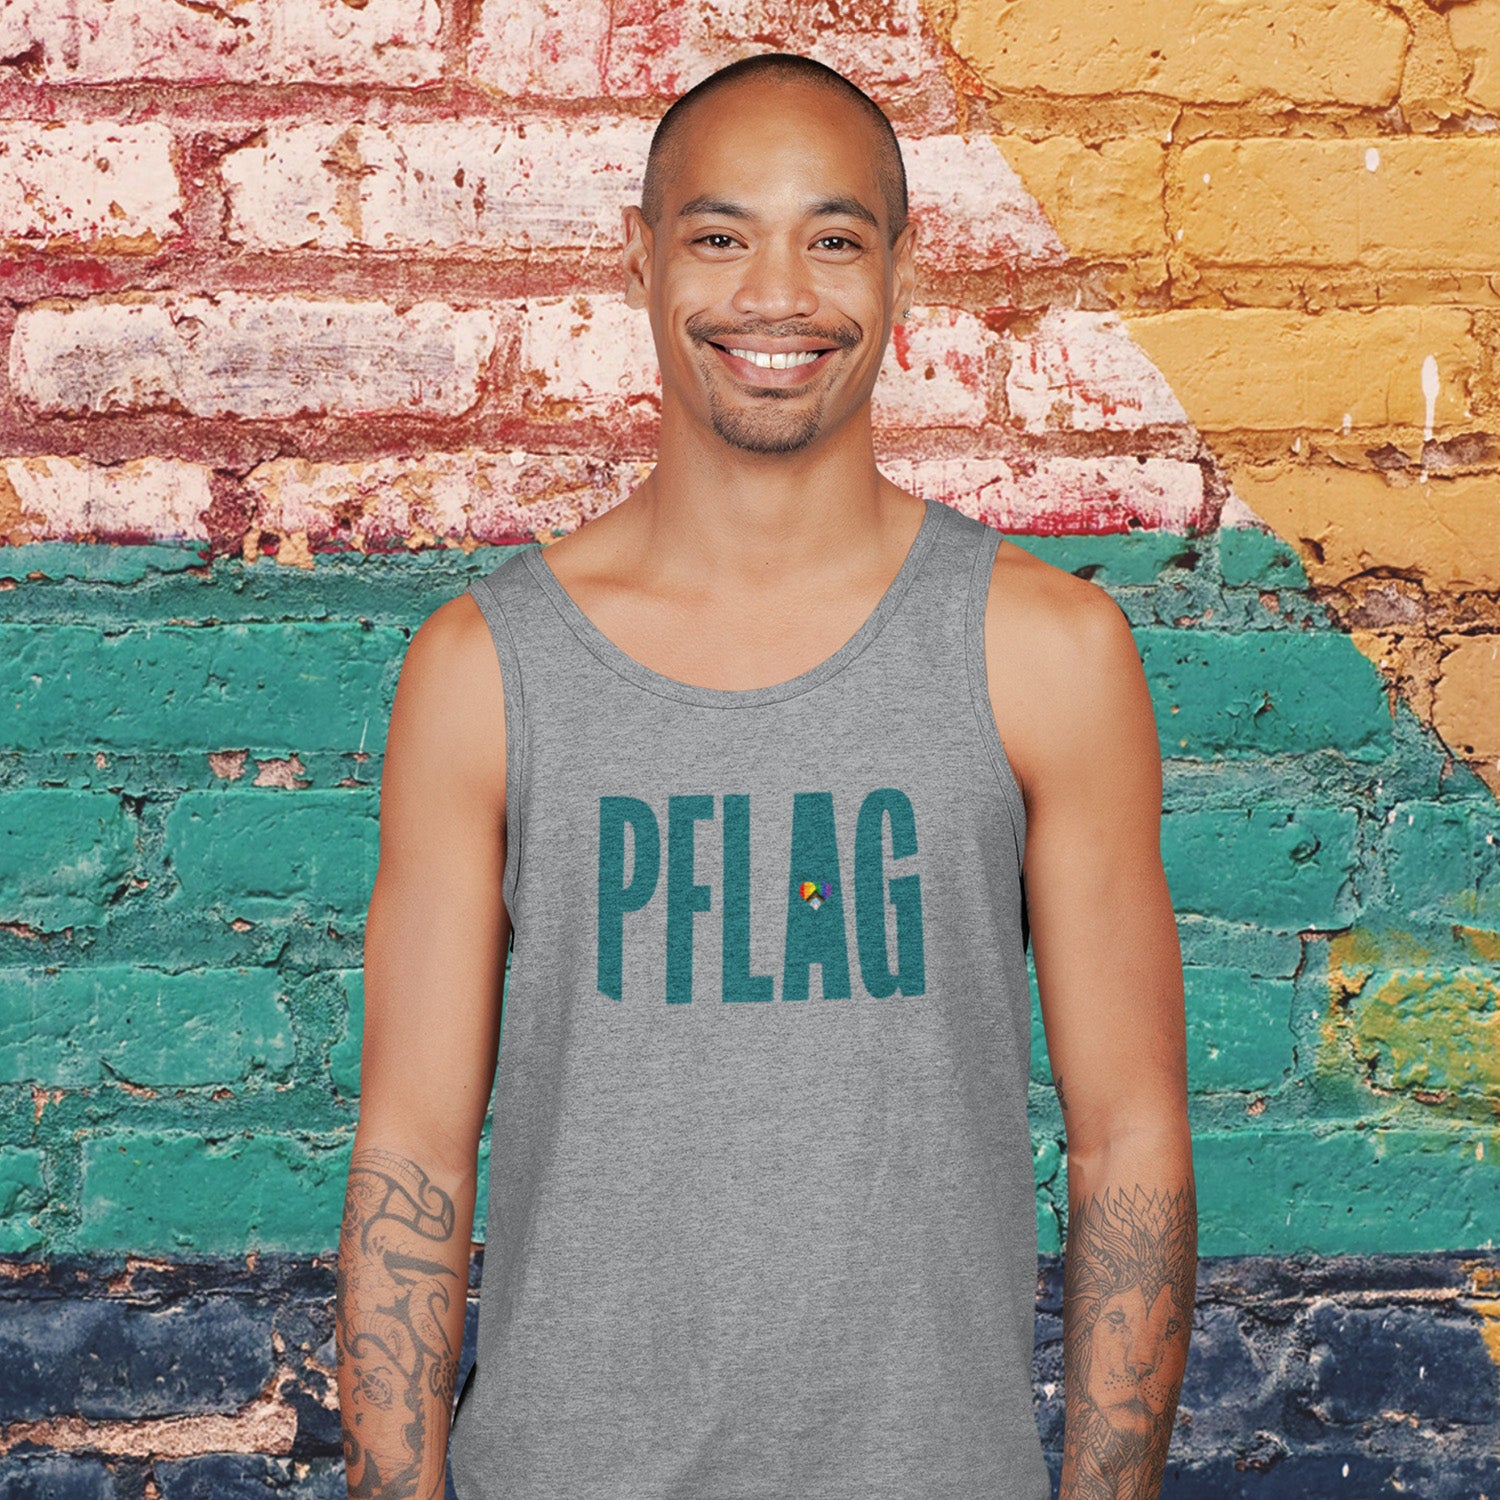 PFLAG Logo - Progress Heart - Wide-Cut Tank Top